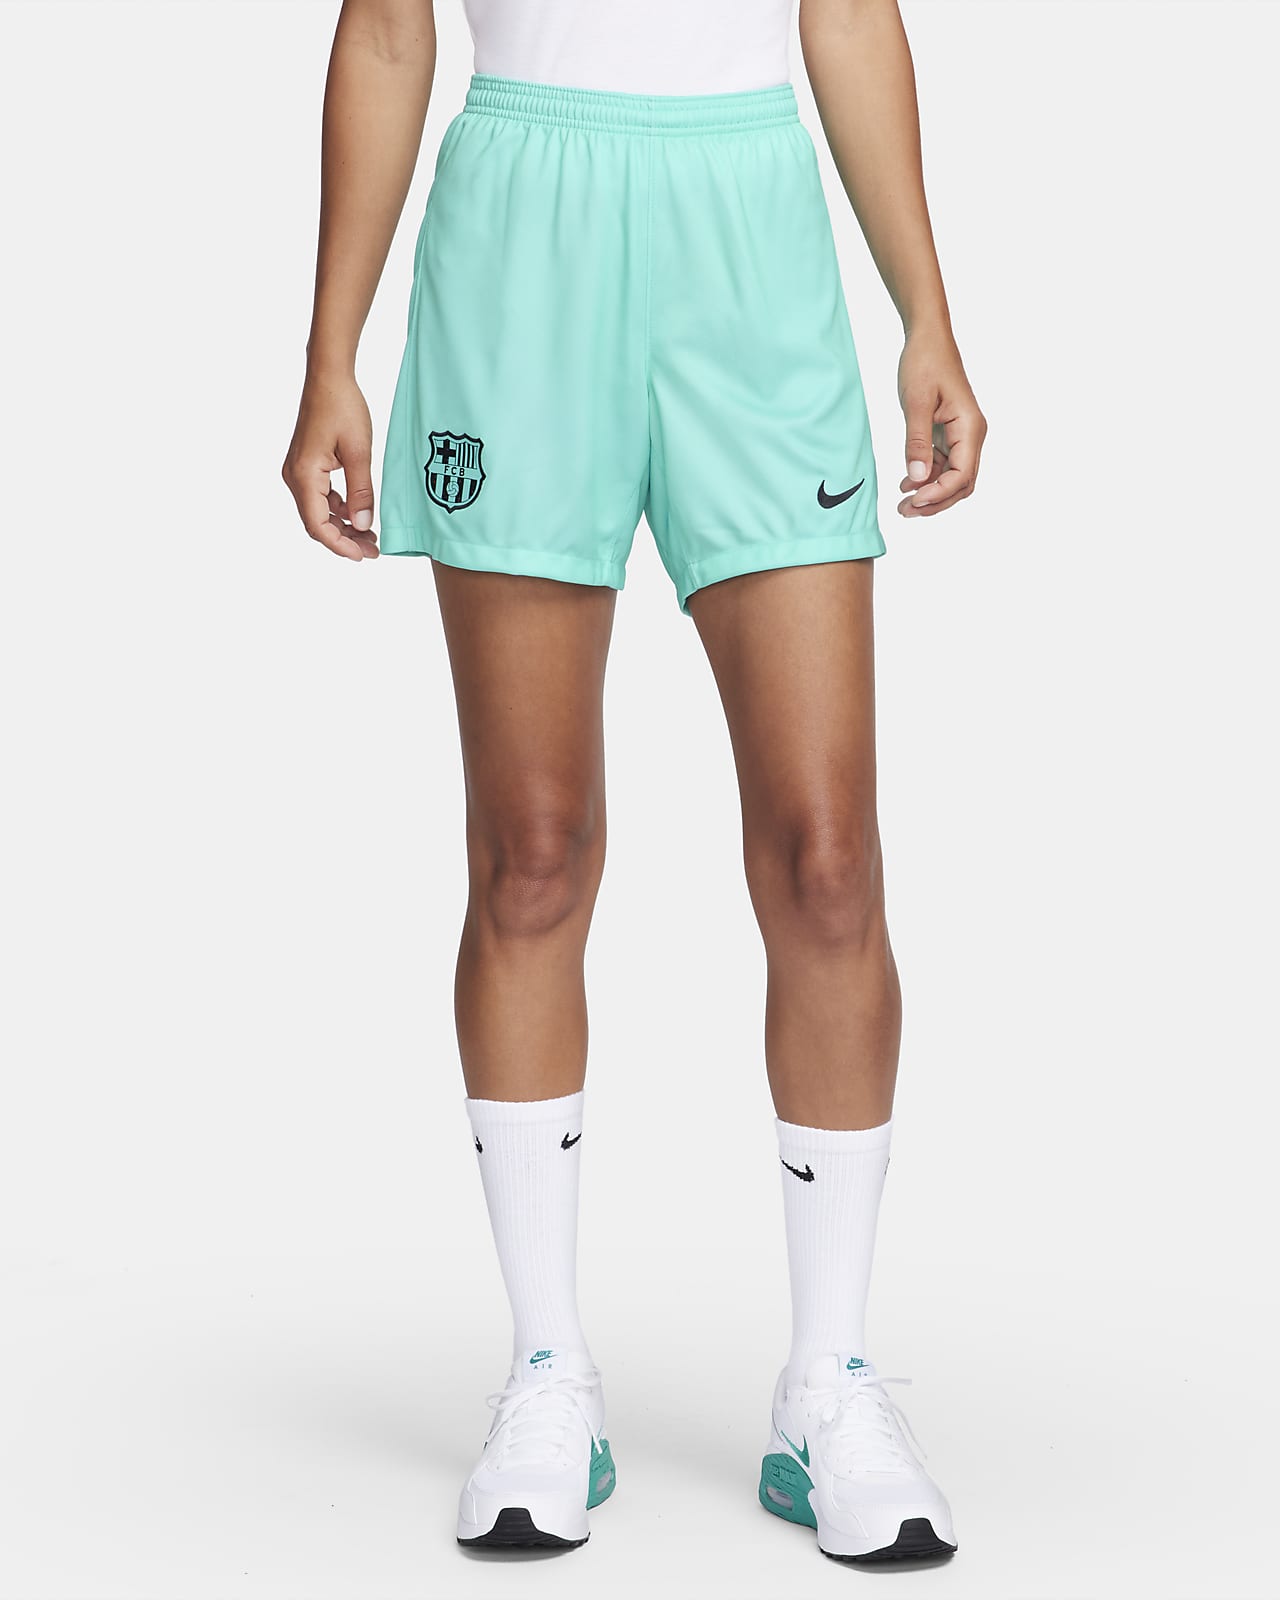 Women's Shorts. Nike CA